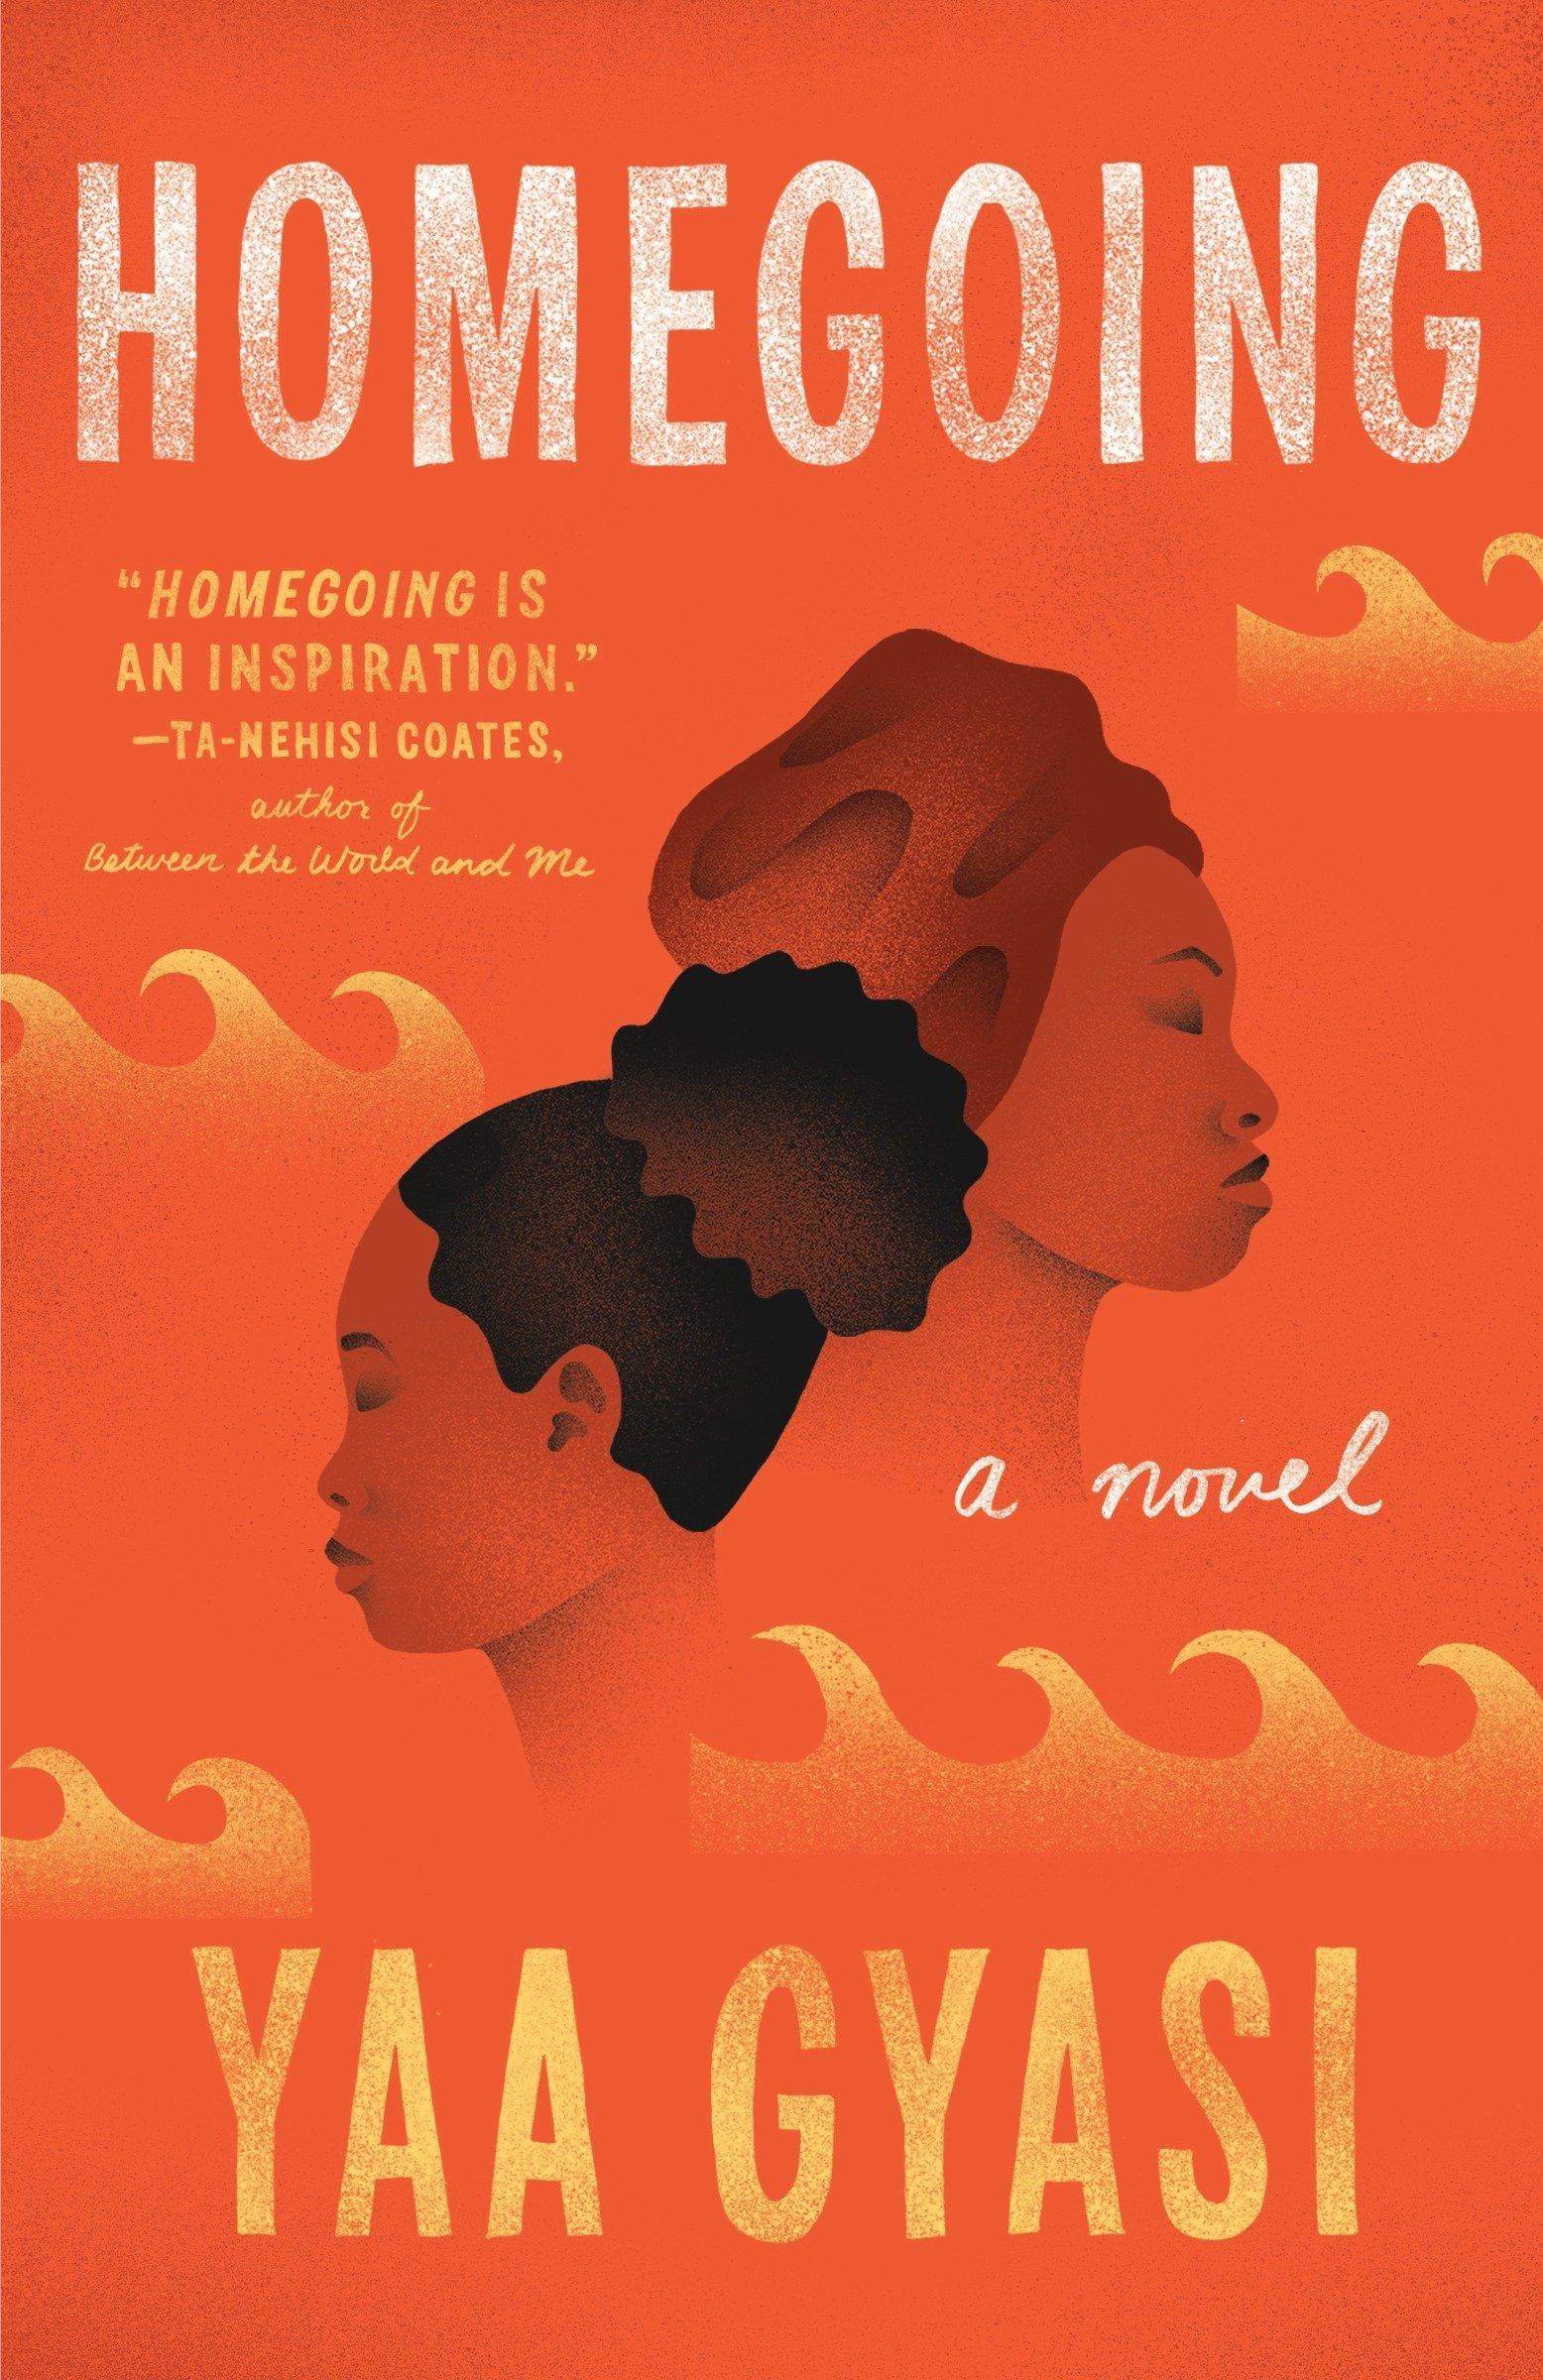 غلاف رواية Homegoing عن طبيعة الحياة كامرأة من أصل أفريقي في الولايات المتحدة الأمريكية